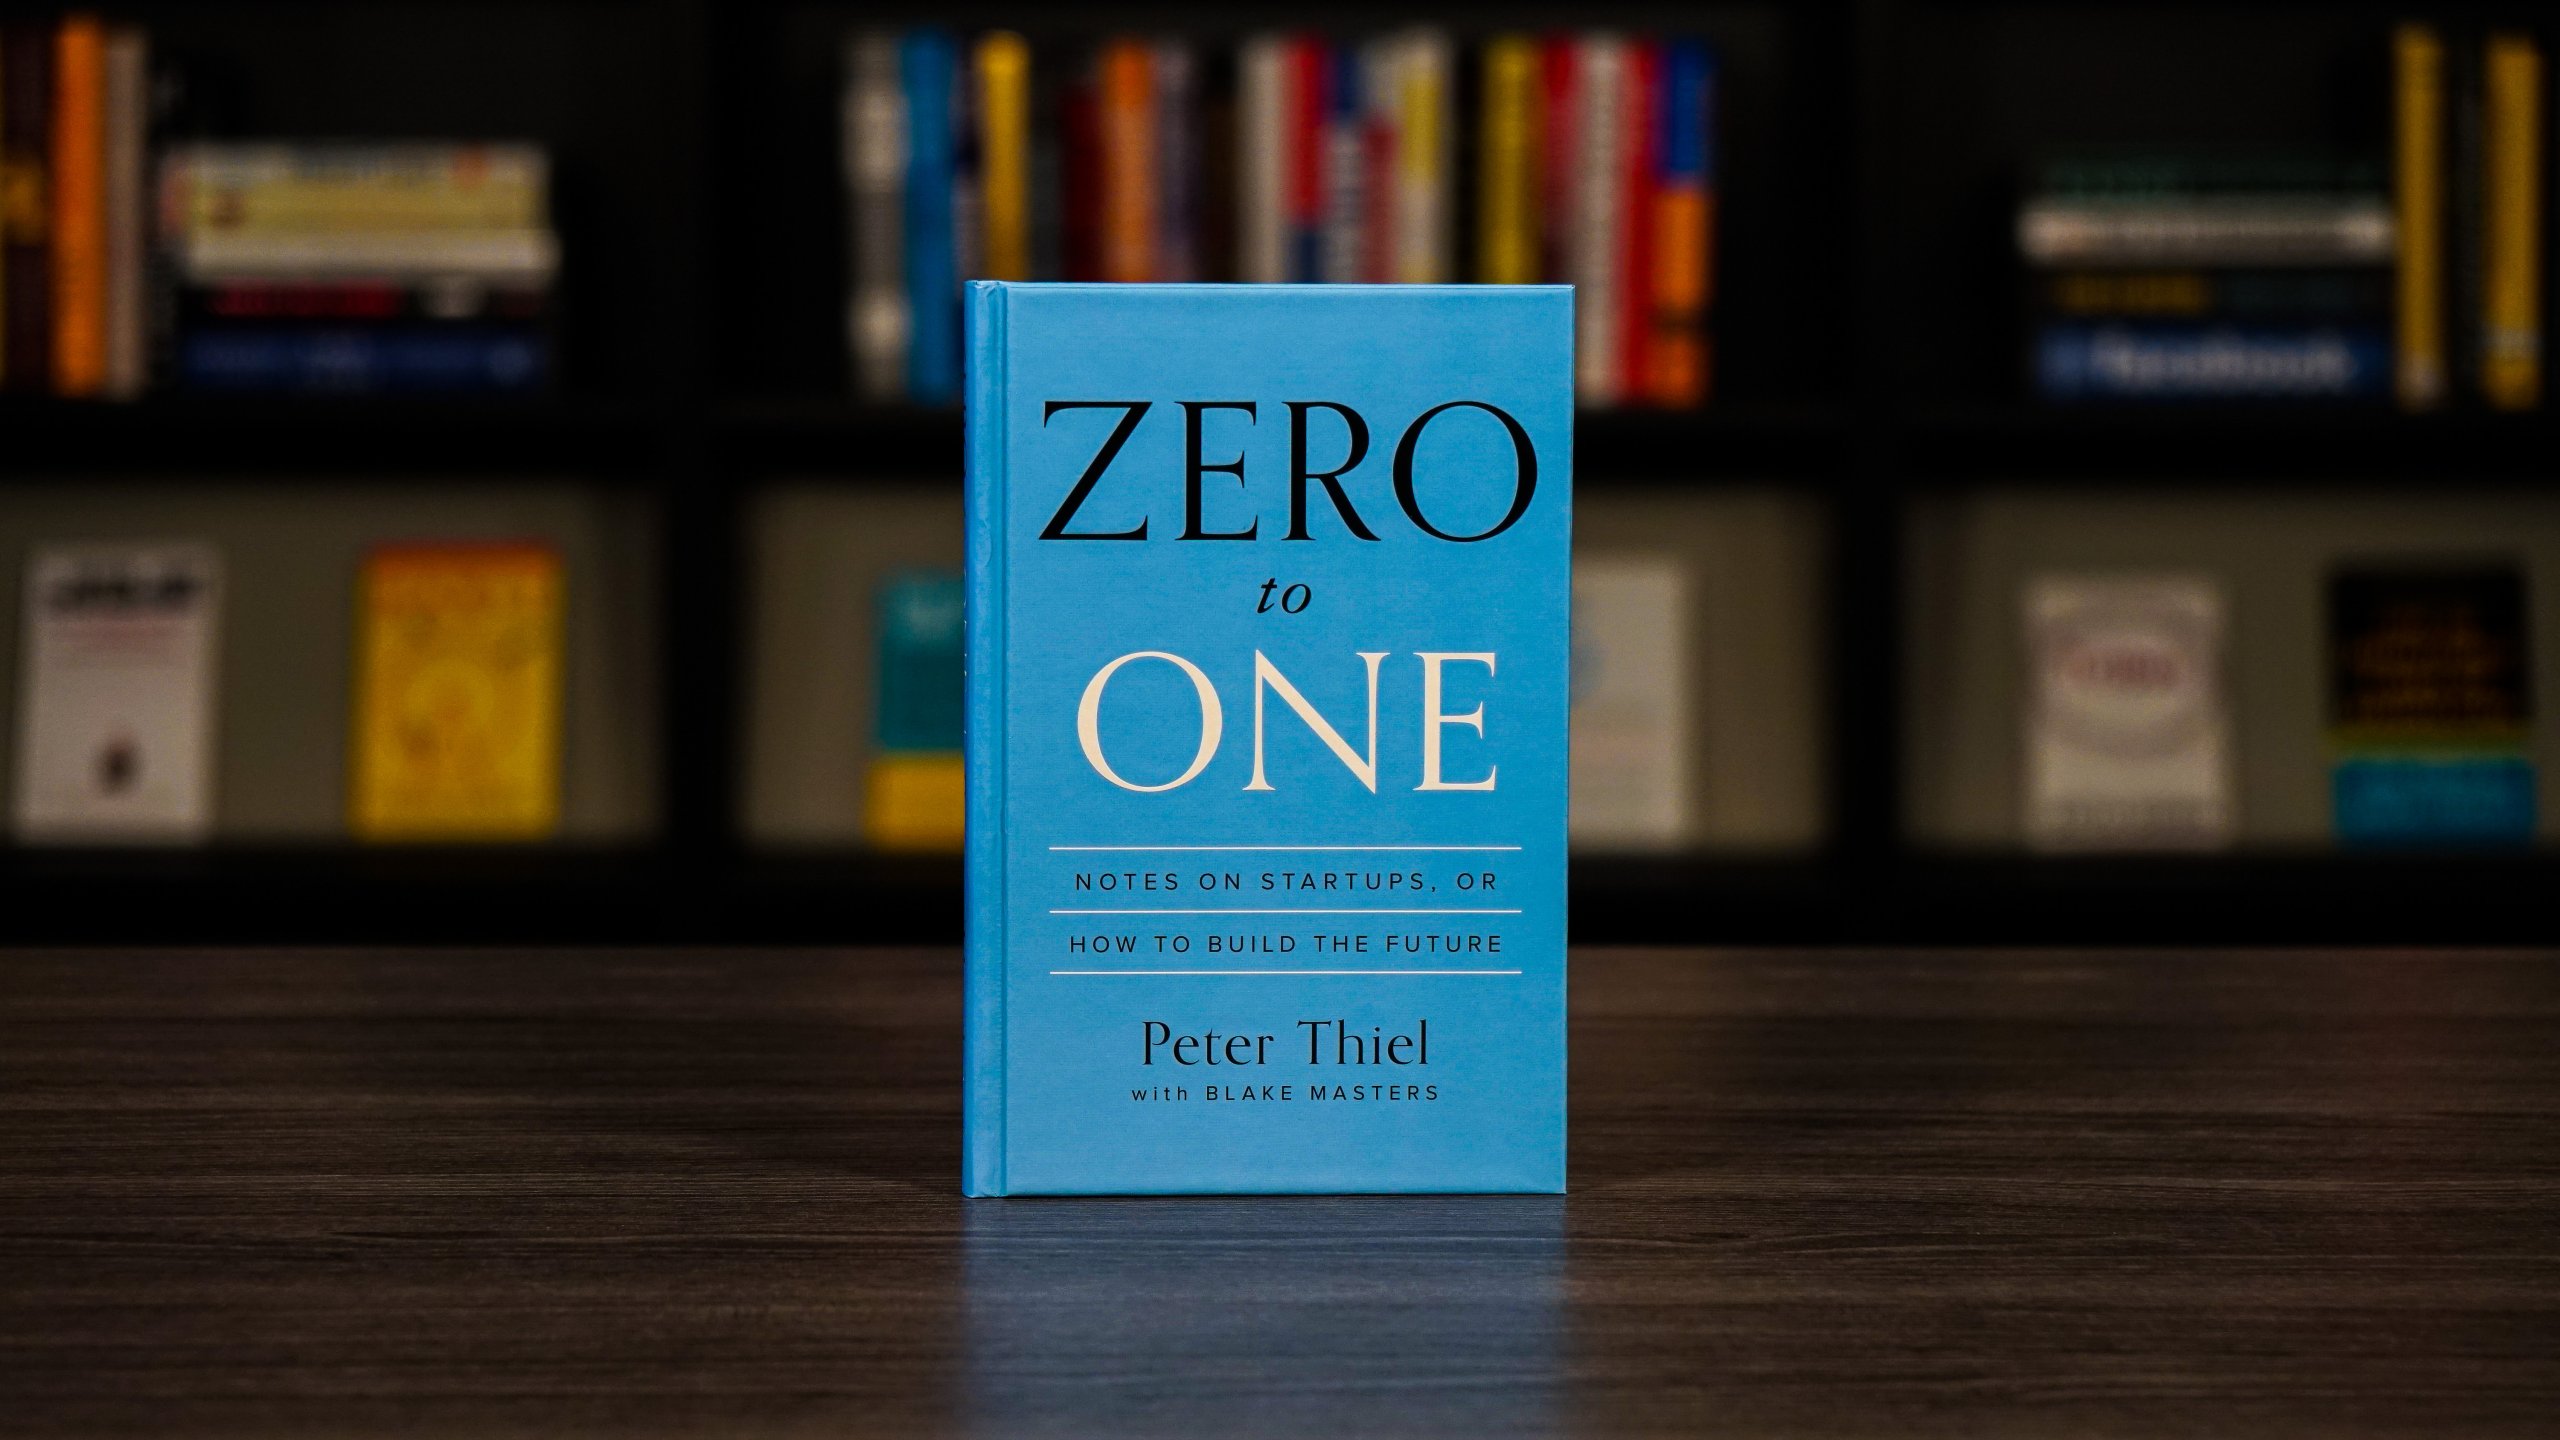 zero to one pdf download free